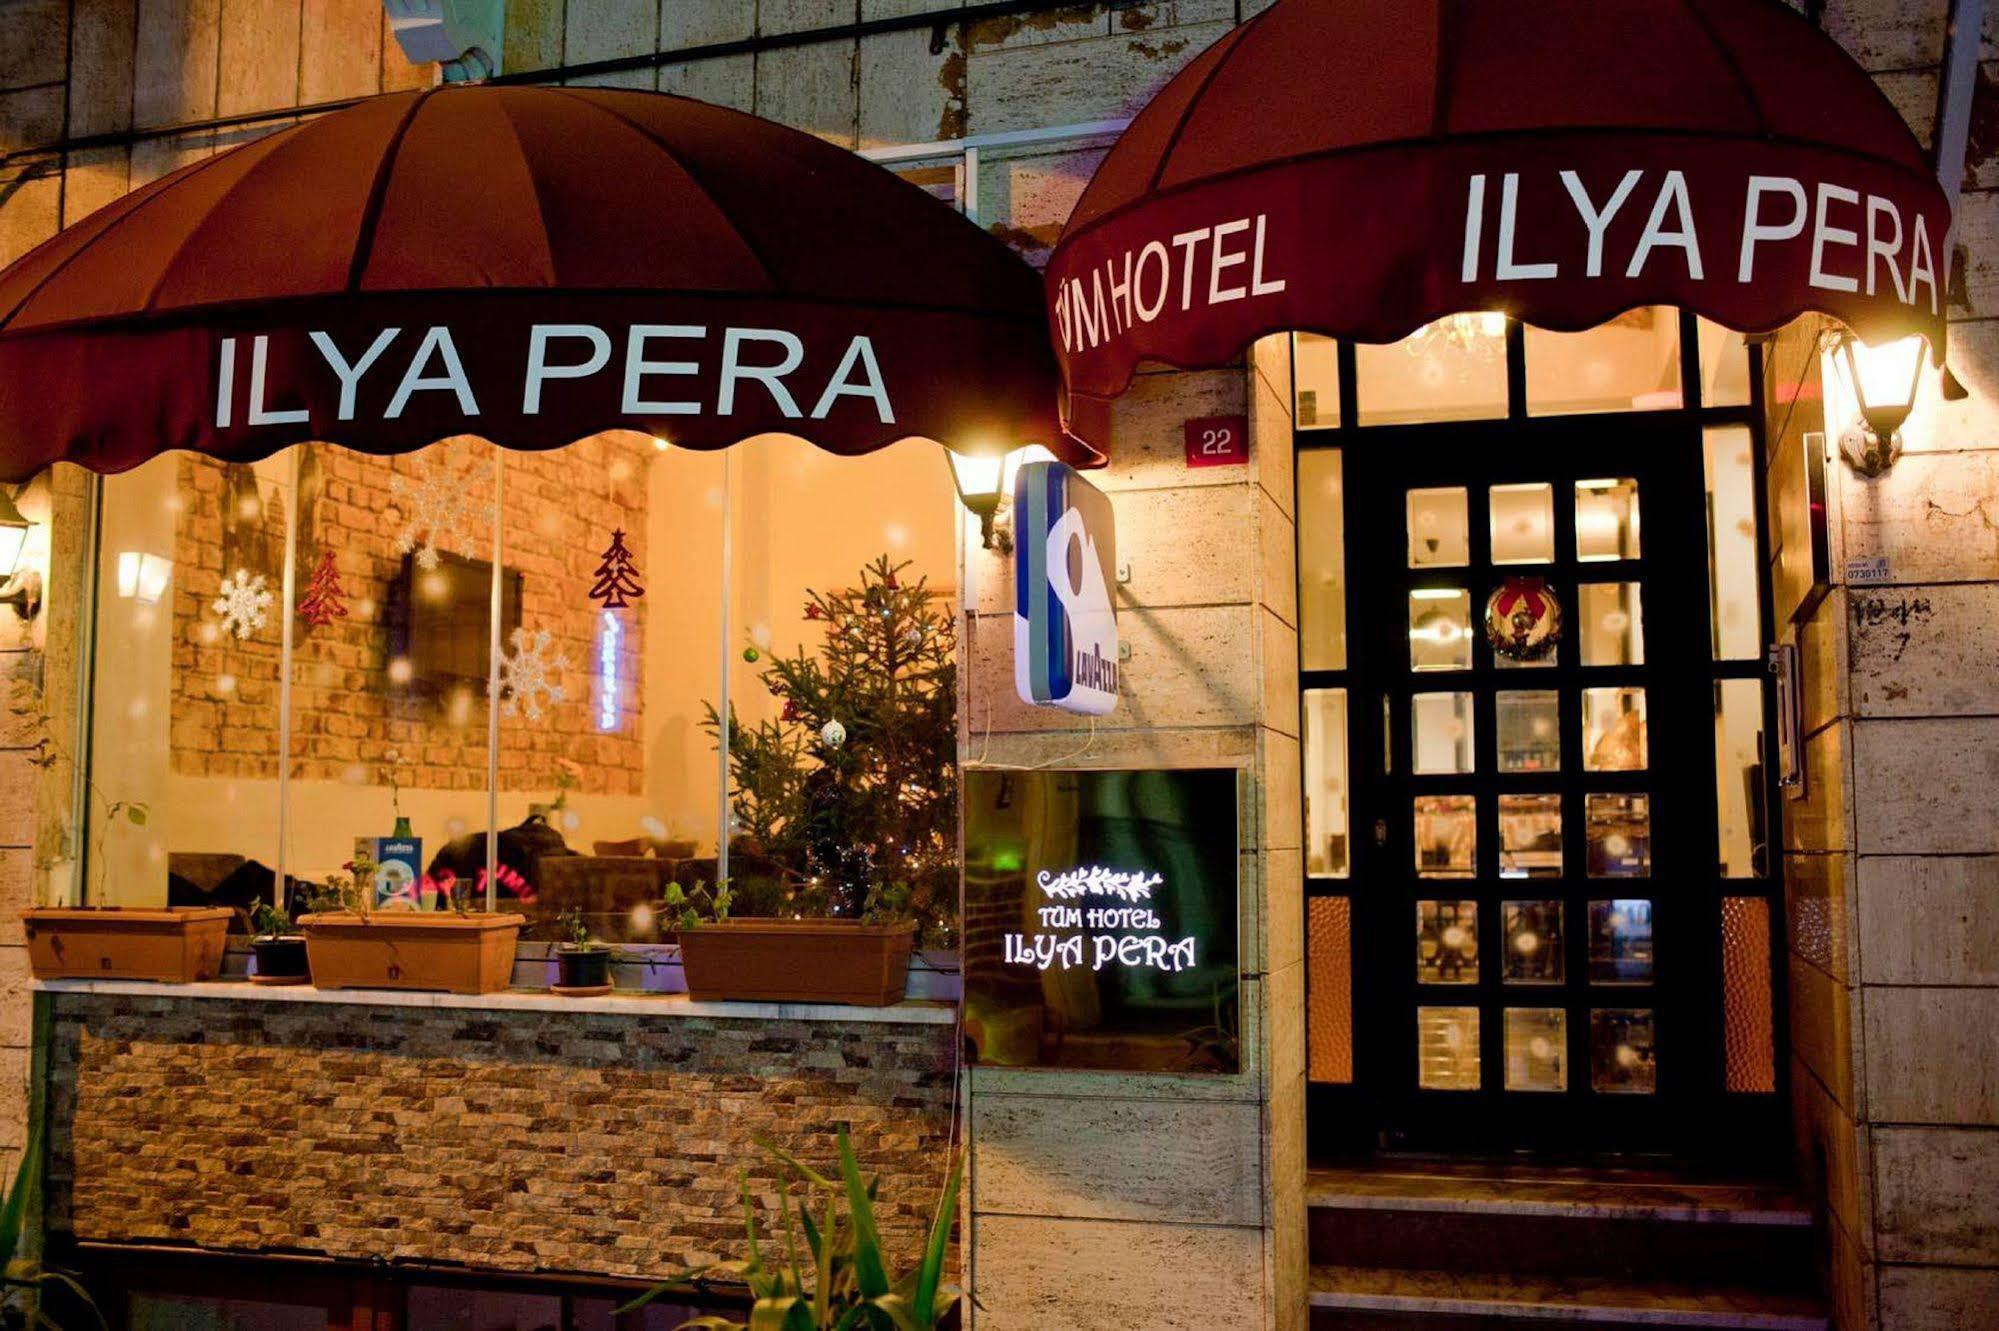 Ilya Pera Hotel